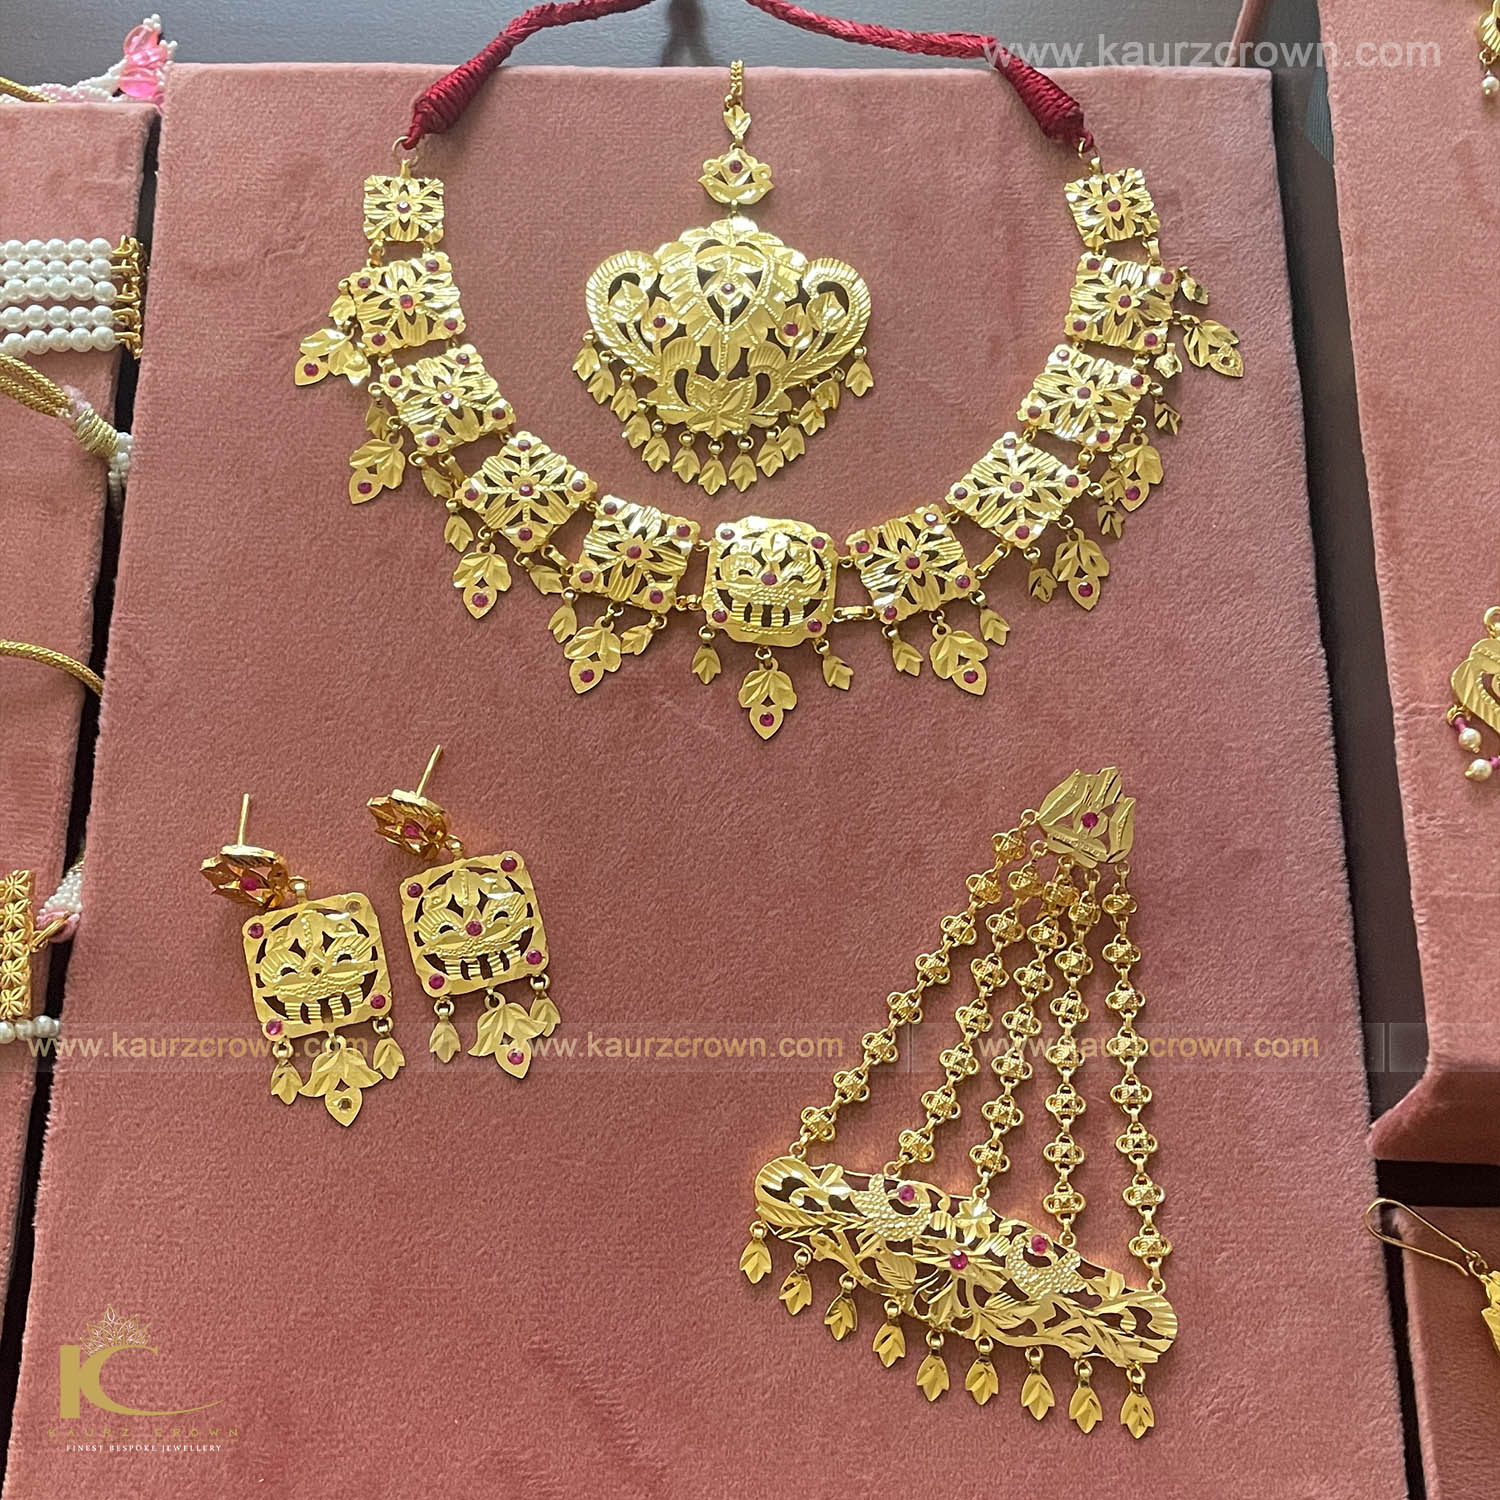 Jeeto Riwayati Gold Plated Necklace Set , Jeeto , Gold plated , kaurz crown , jewellery , necklace set